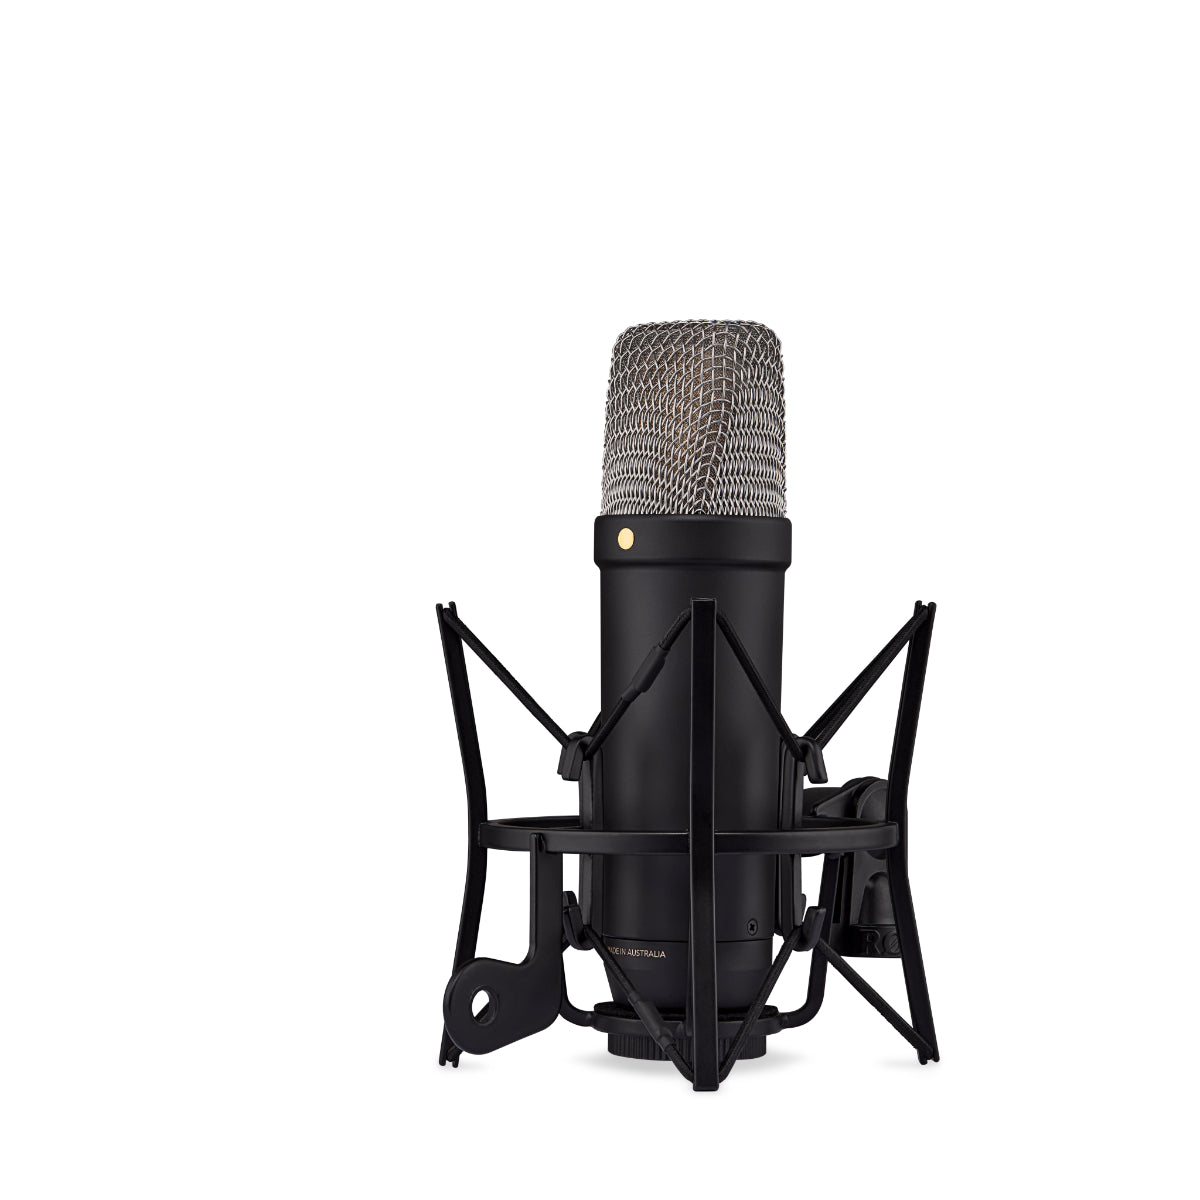 Rode NT1 Gen 5 Studio Cardioid Condenser Microphone Package (Black)